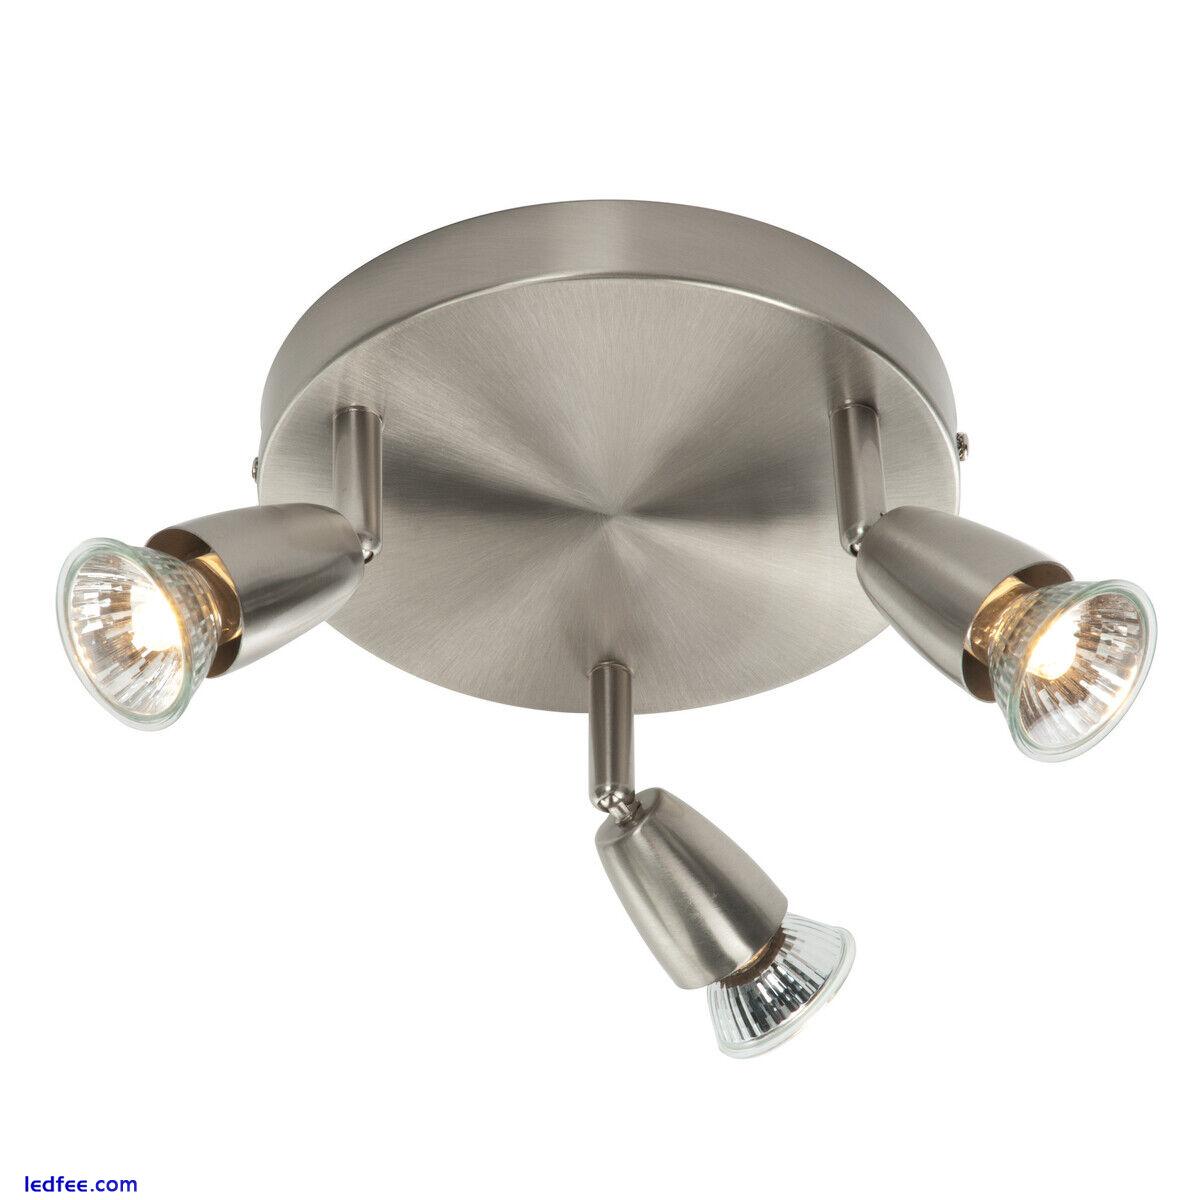 Saxby Amalfi Triple Head GU10 Spotlight Swivel Ceiling Mounted Dimmable Light 3 